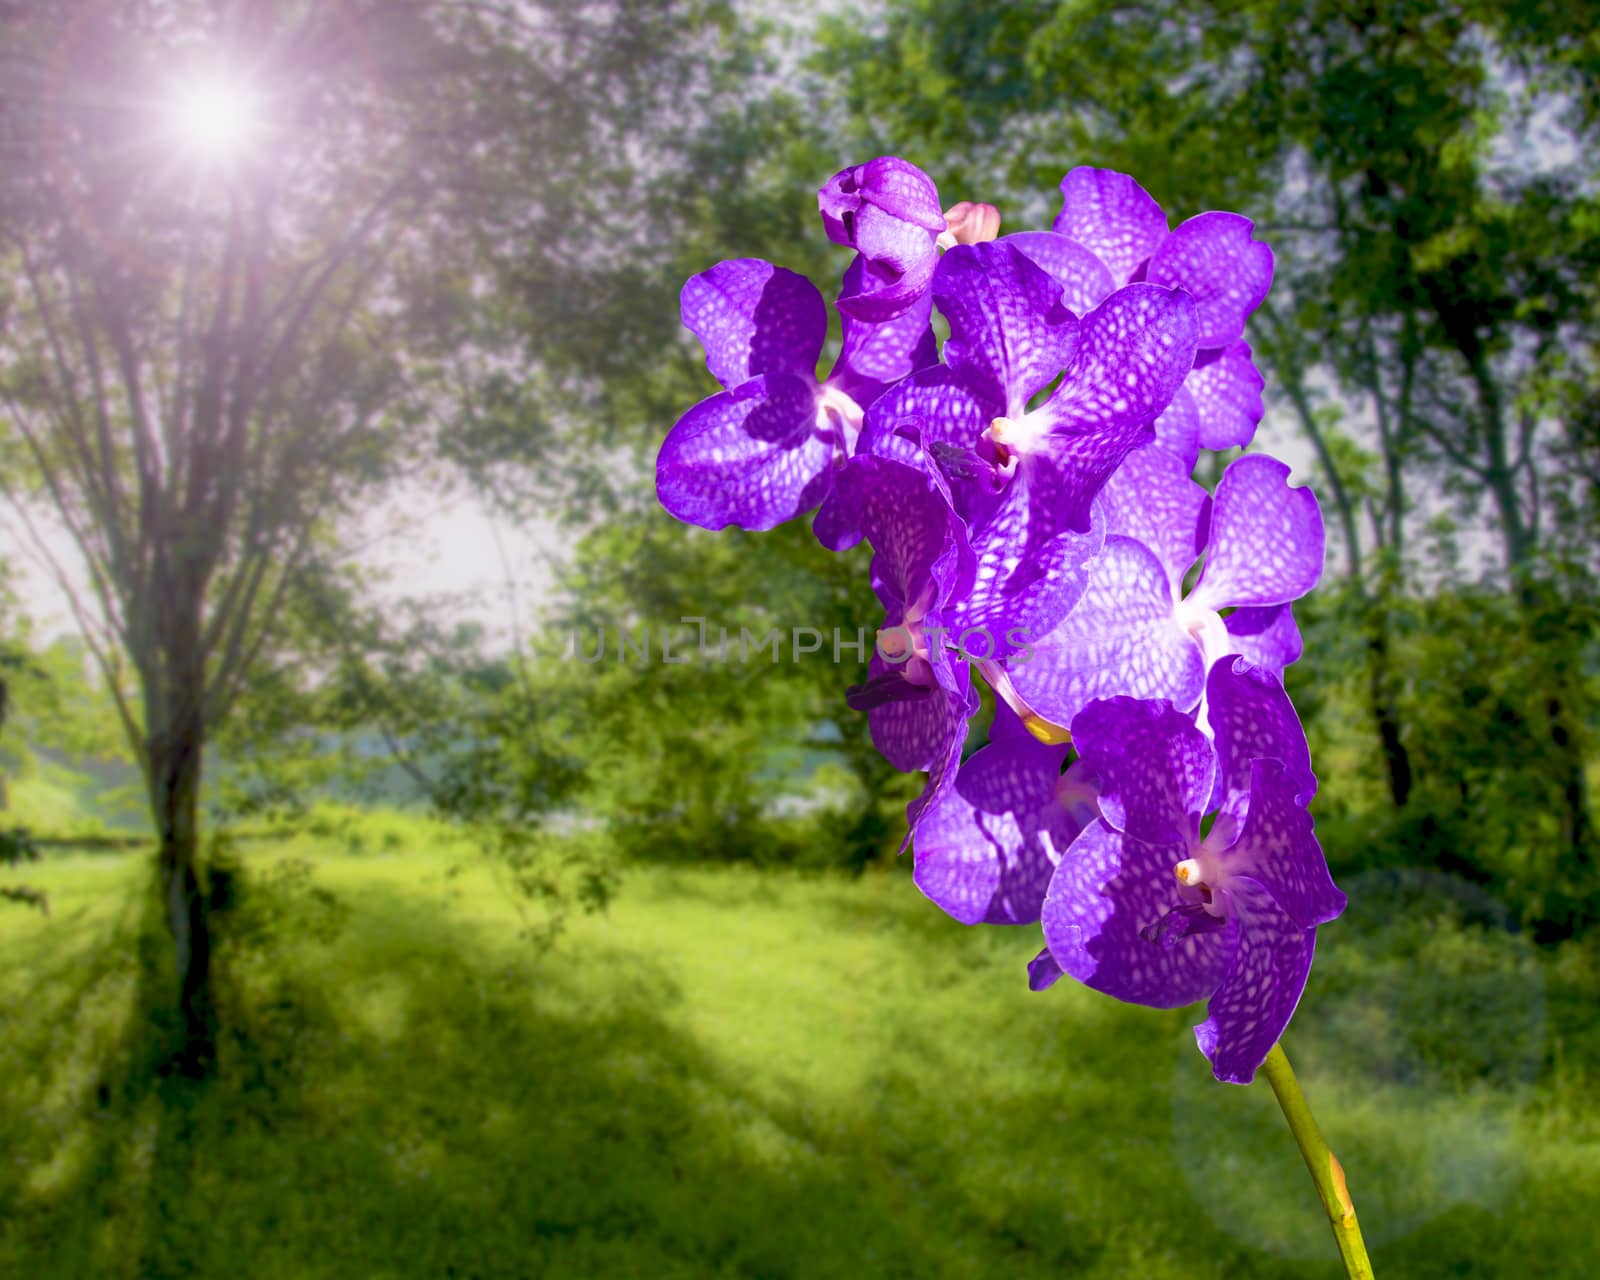 Blue Vanda coerulea Orchid by kitty45